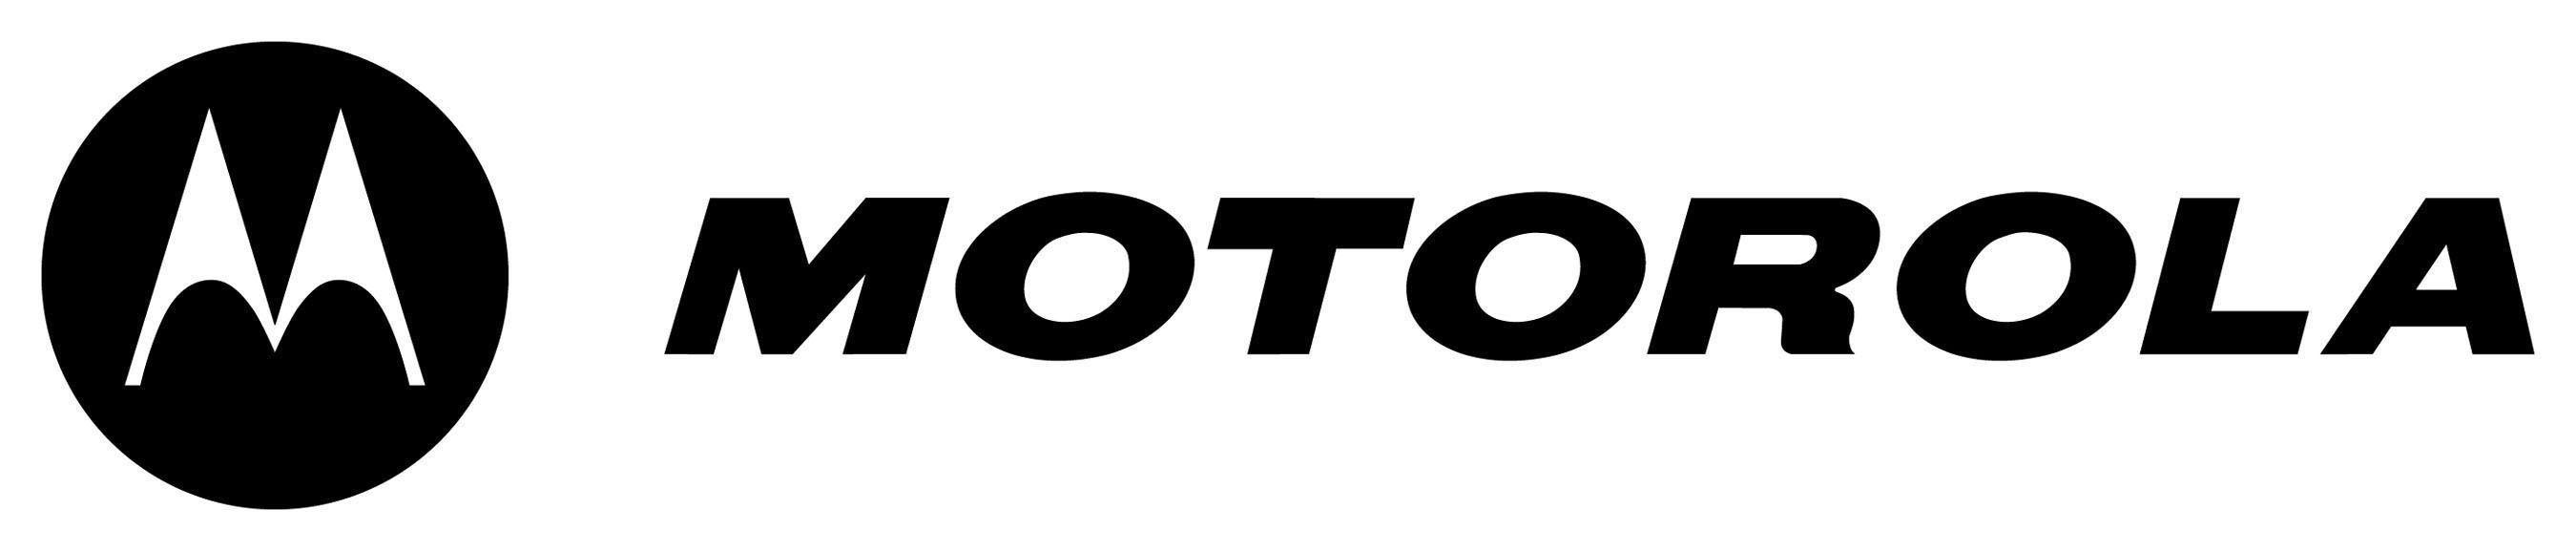 Motorola Home Logo - Buy Two Way Radios,Outdoor Gear from Midland,Motorola & Uniden